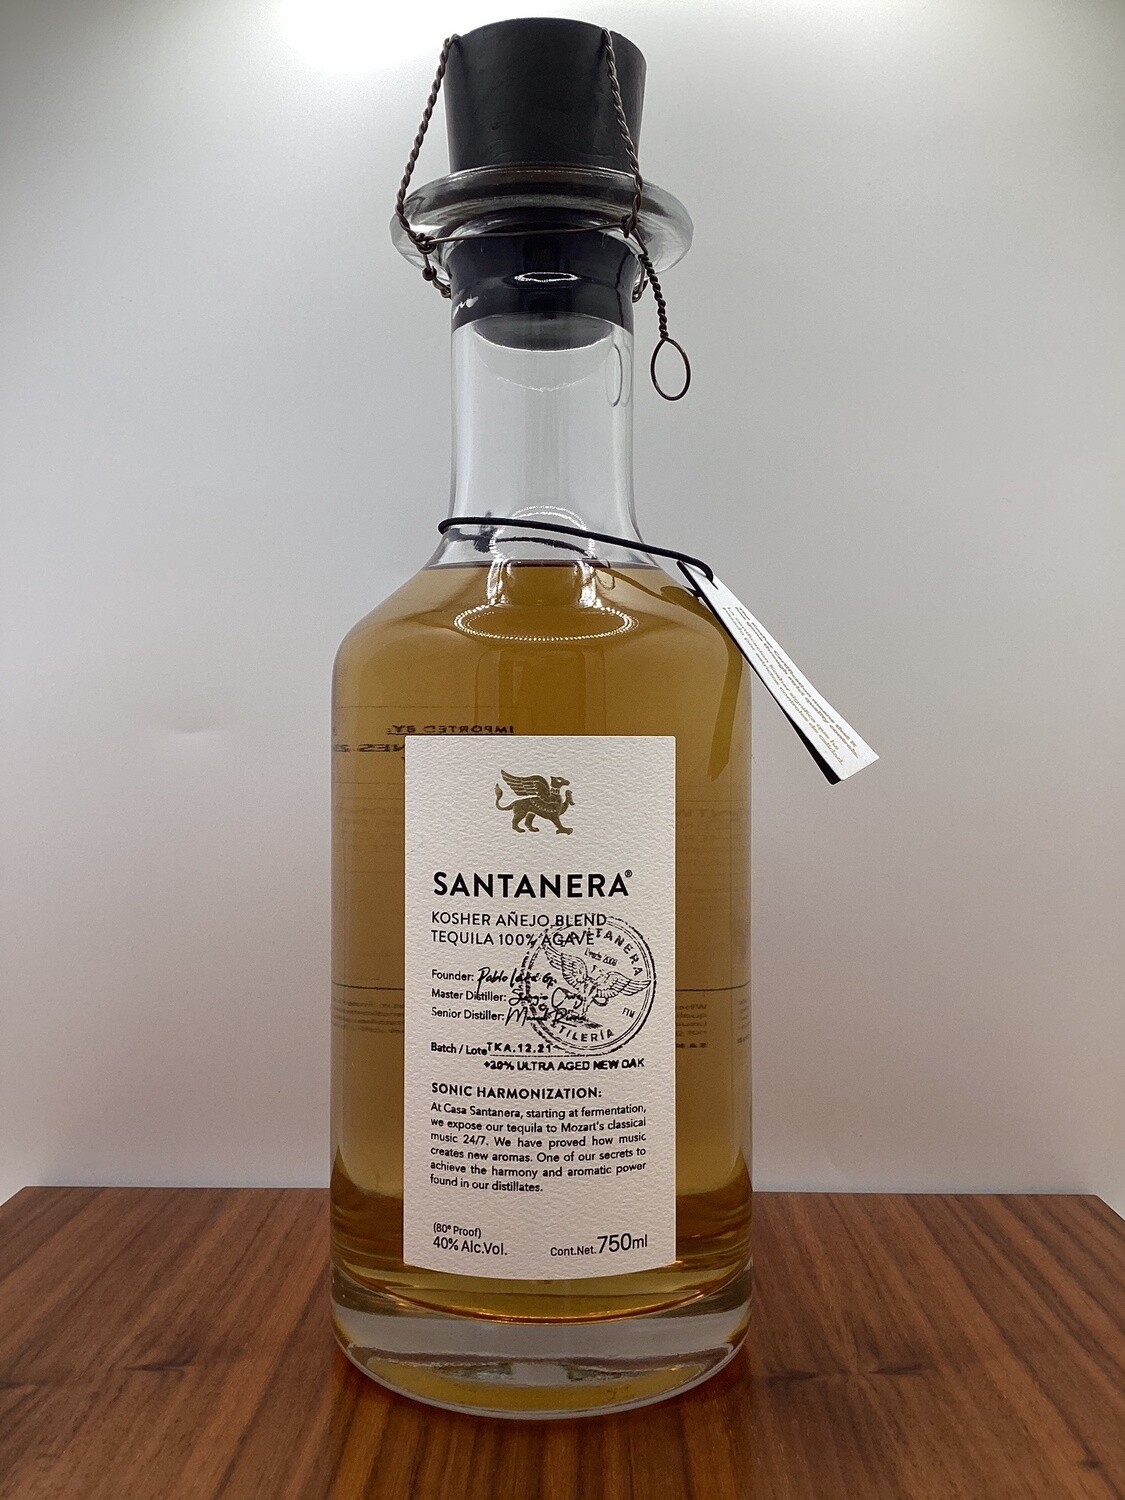 Destileria Santanera, Kosher Añejo Tequila 100% de Agave